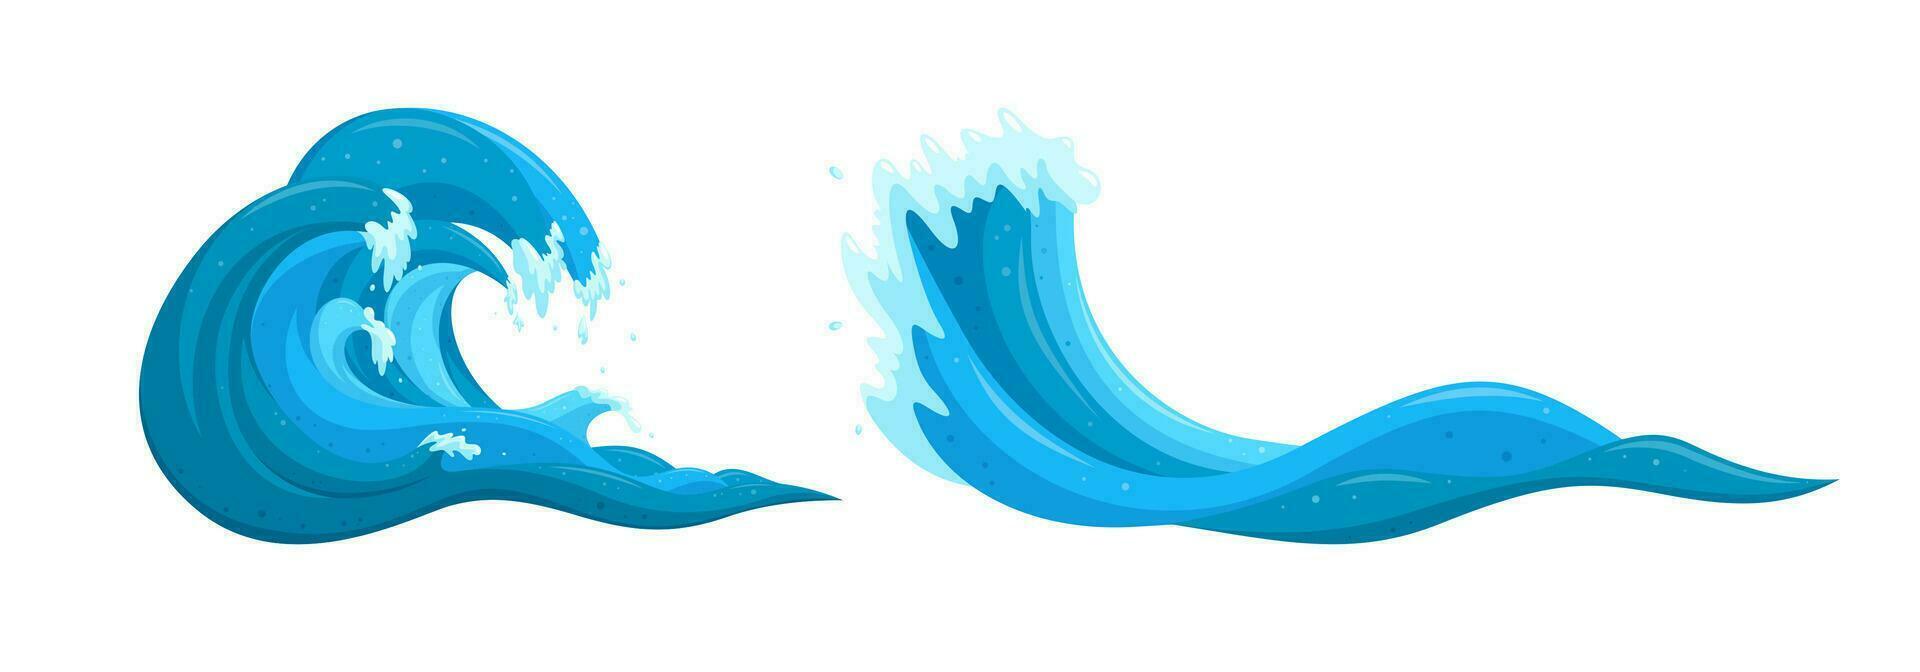 golvläggning vatten element. hav tsunami vågor uppsättning. tecknad serie vektor illustrationer